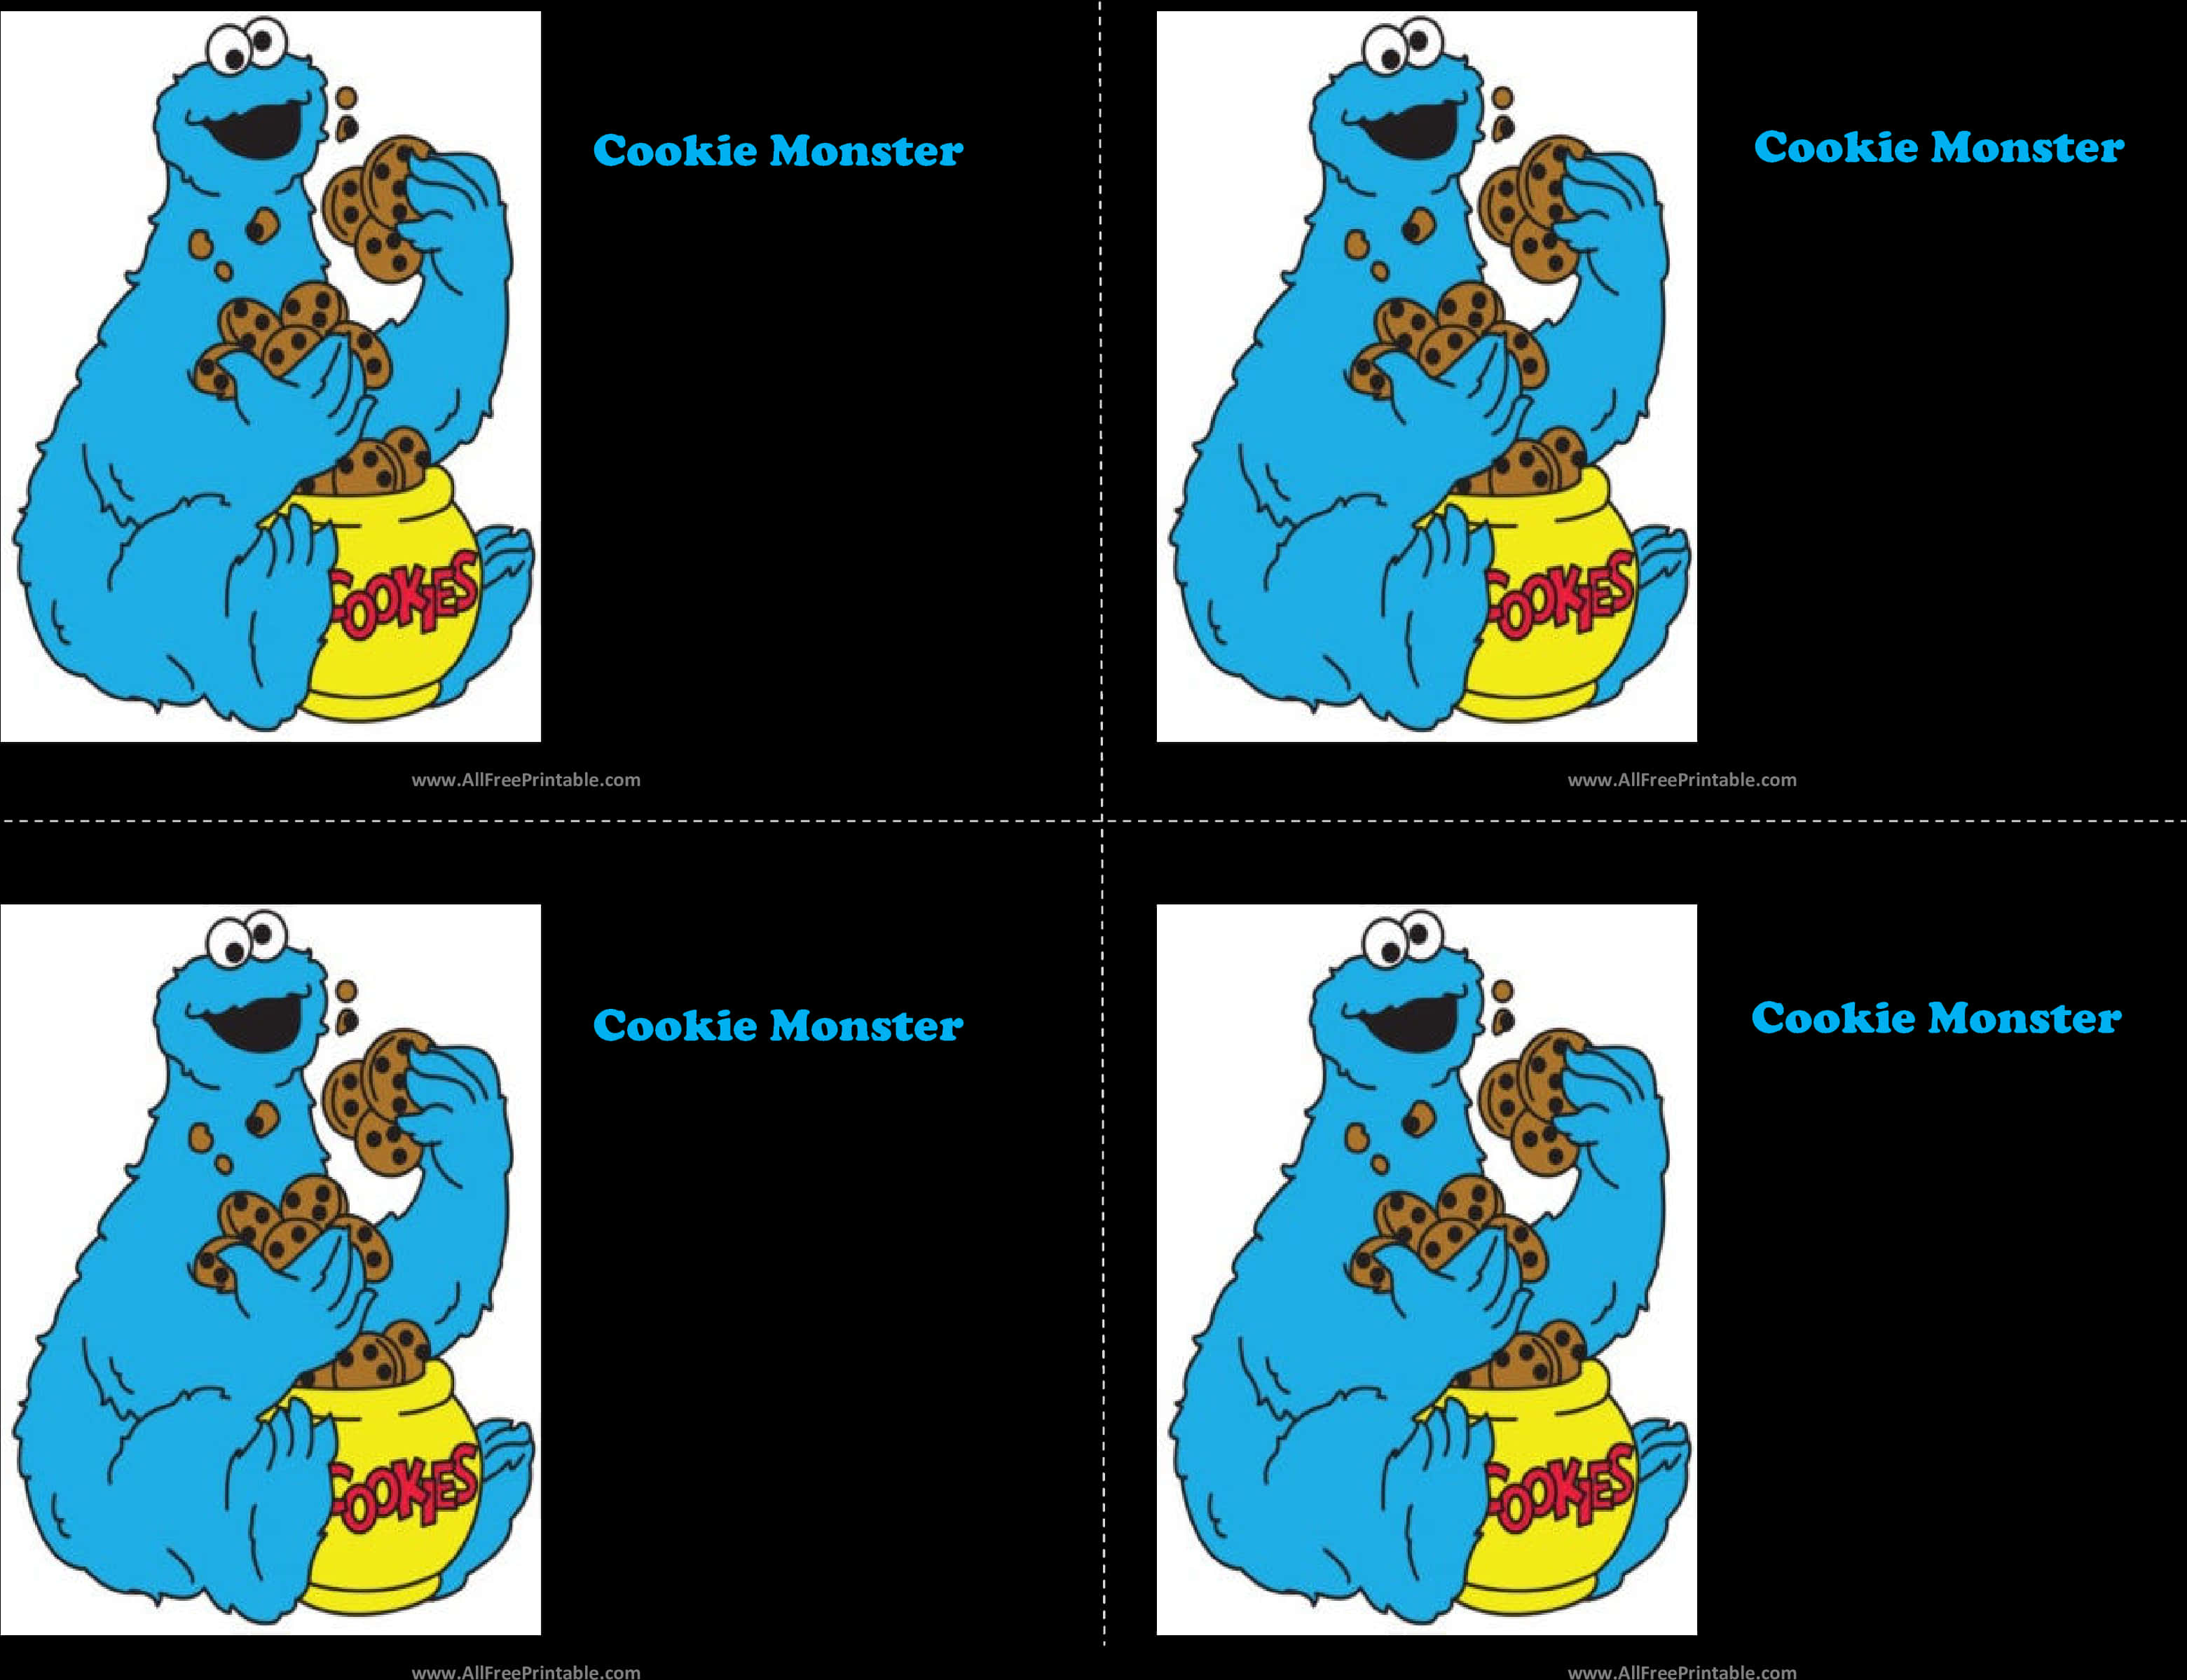 Cookie Monster Eating Cookies PNG image